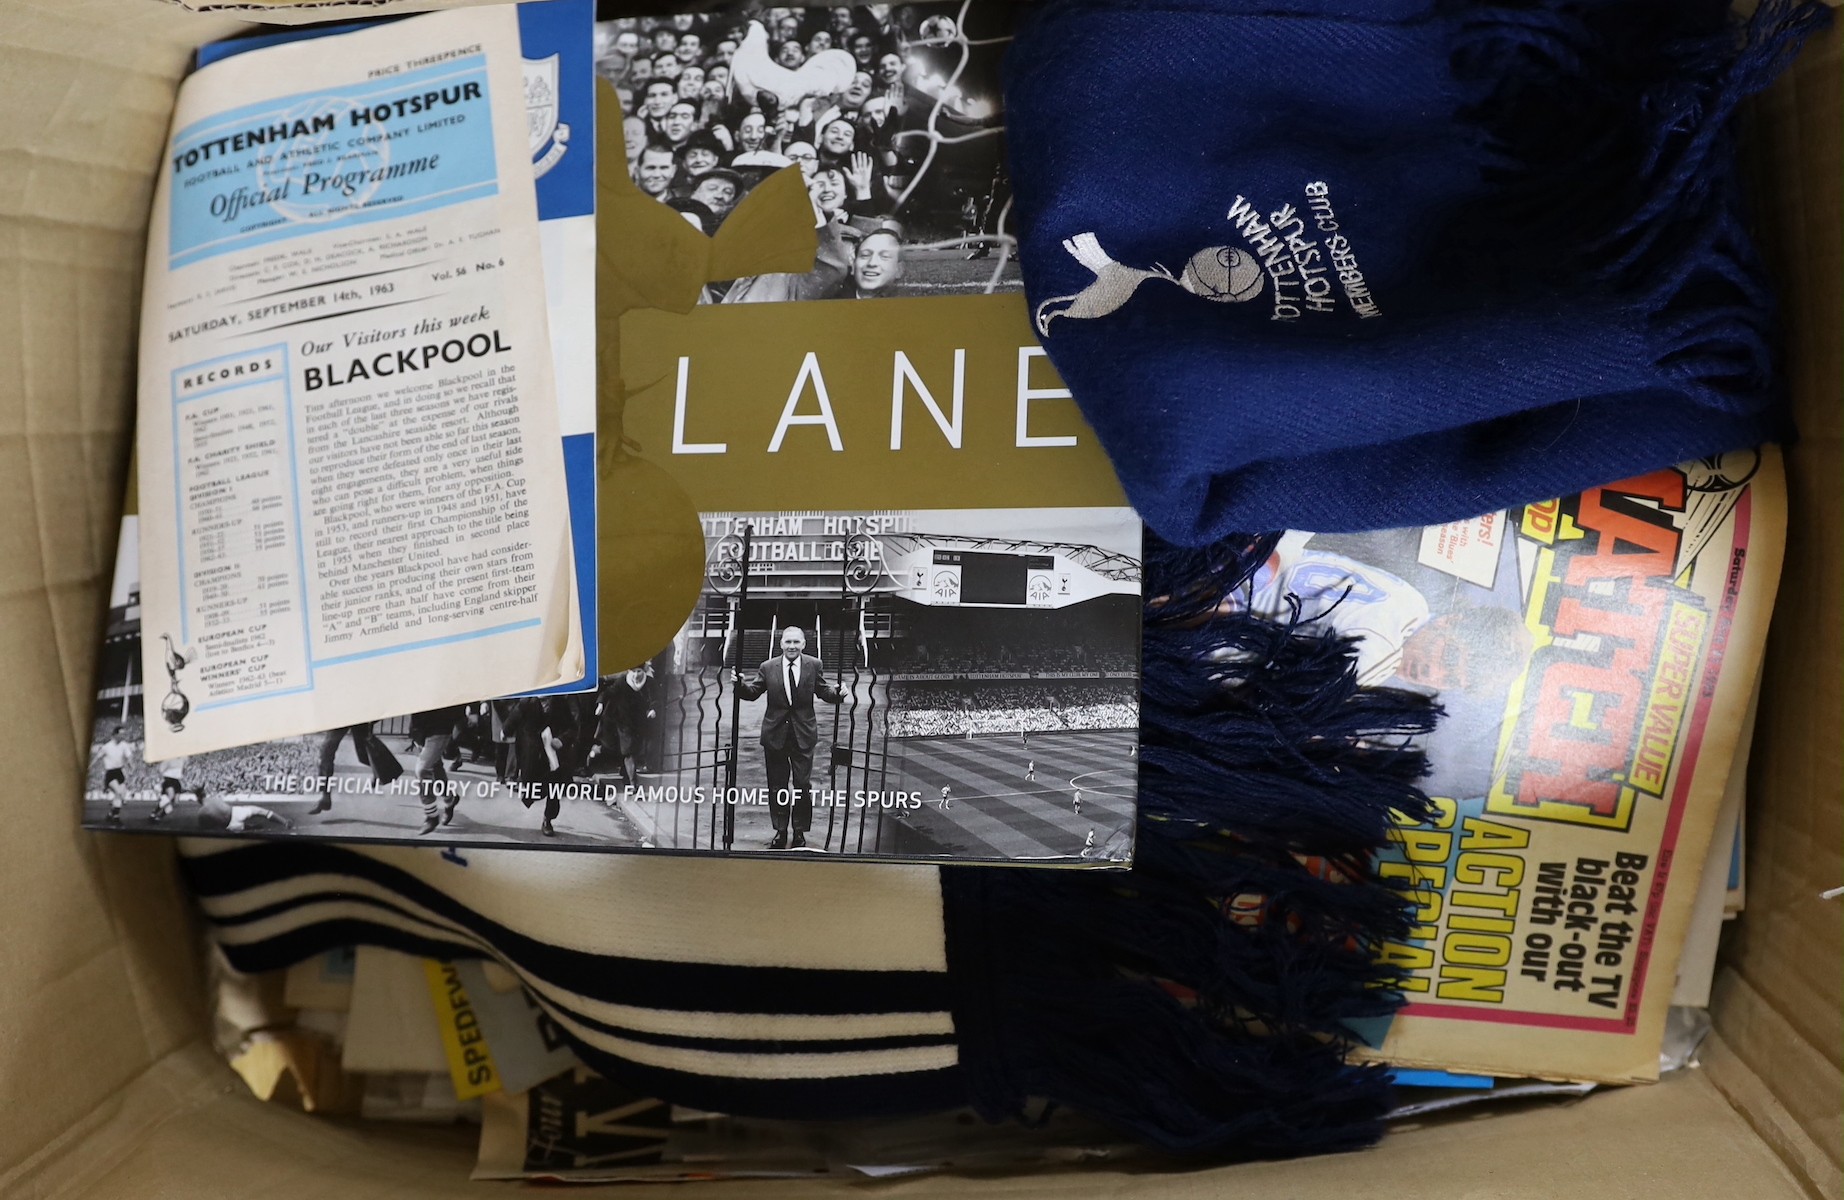 Tottenham Hotspur FC programmes and memorabilia